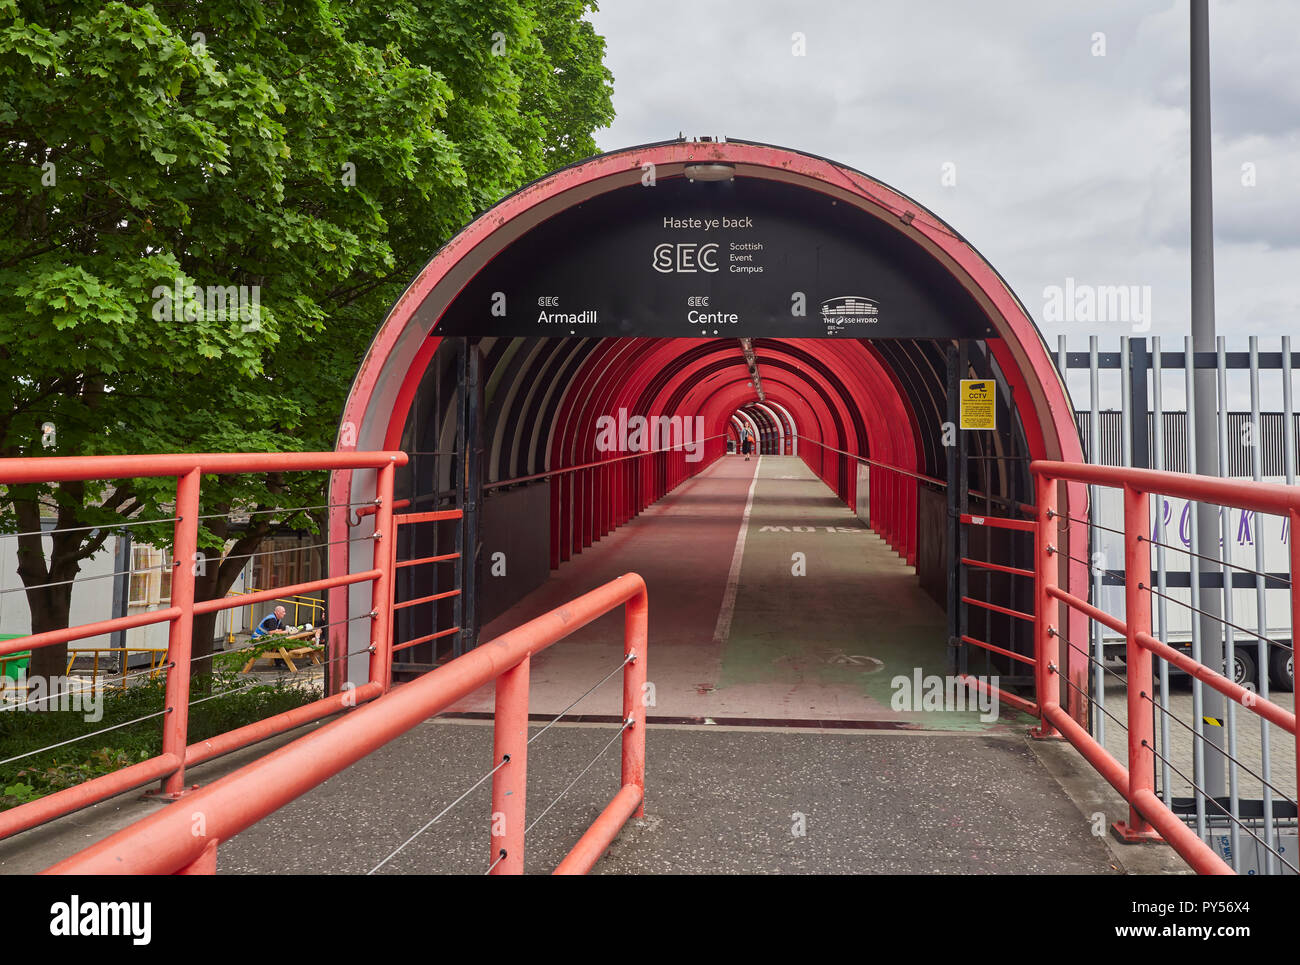 La zone piétonne et promenade à vélo menant de la SEC de l'autre côté de la voie express Clydeside à Glasgow, Écosse, Royaume-Uni Banque D'Images